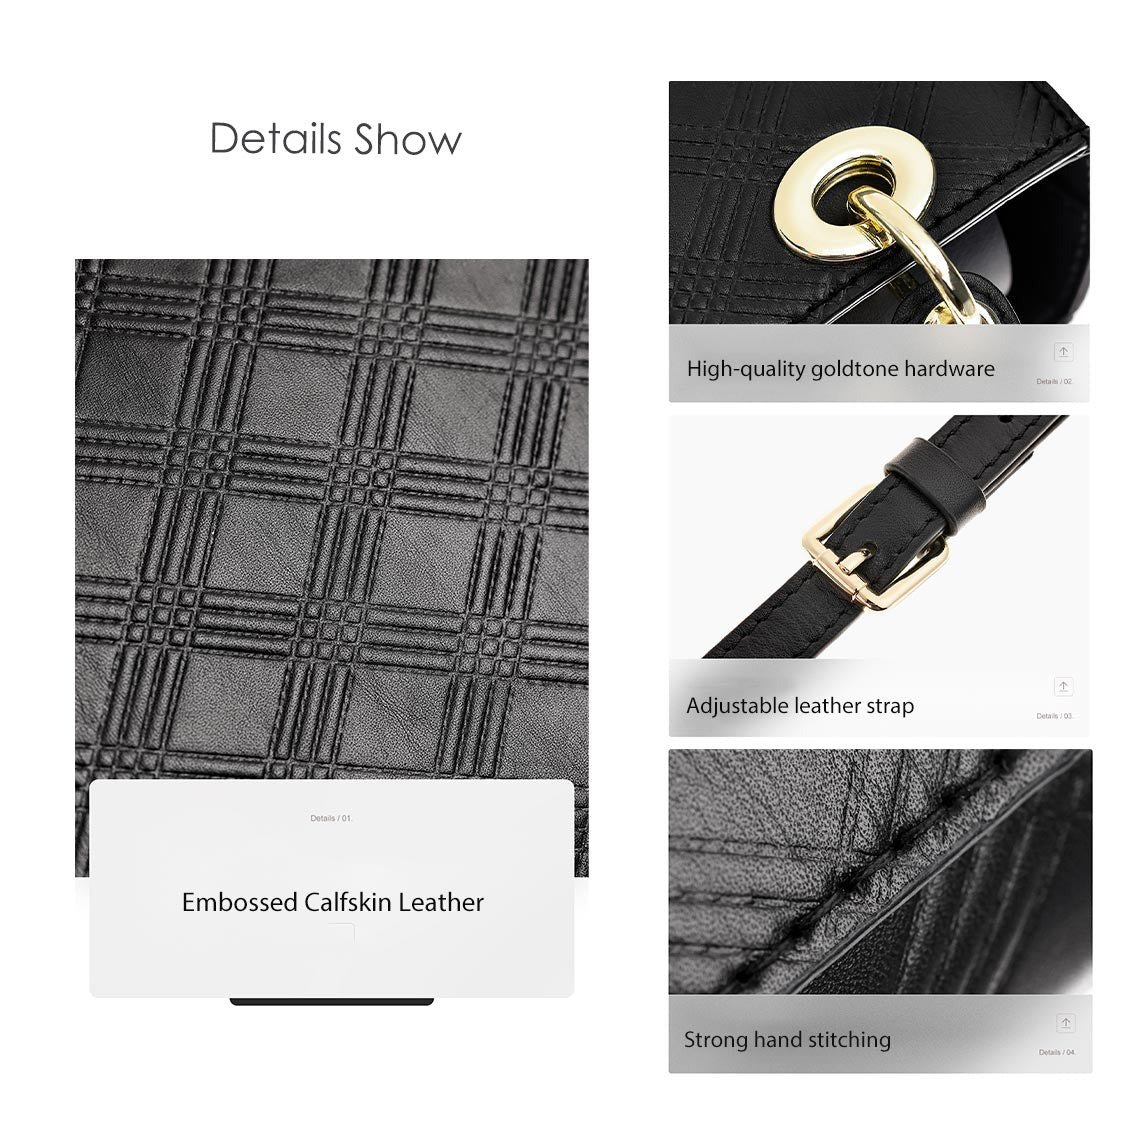 Genuine Leather Bag Making Kit Details - POPSEWING™